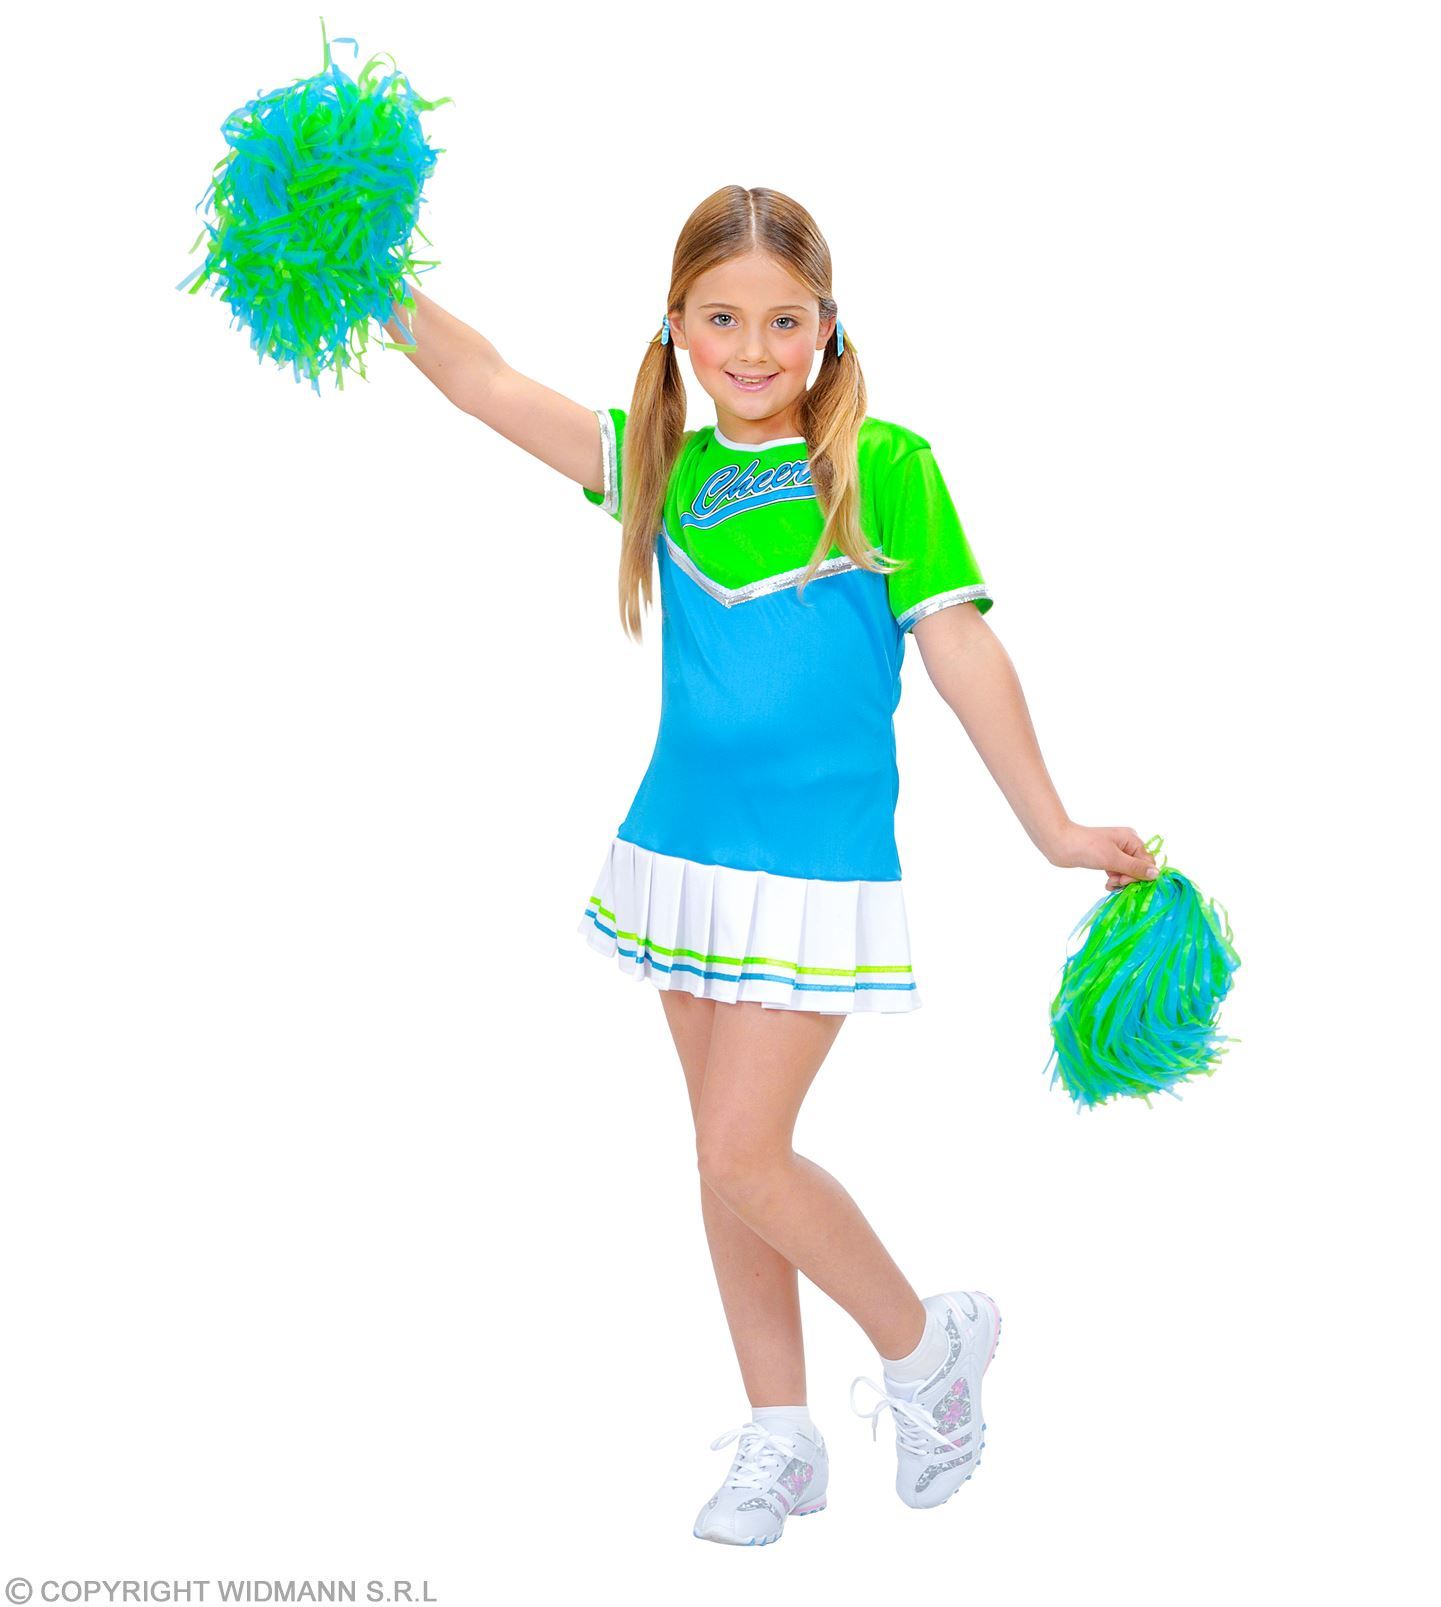 Cheerleader kostuum kind groen met blauw